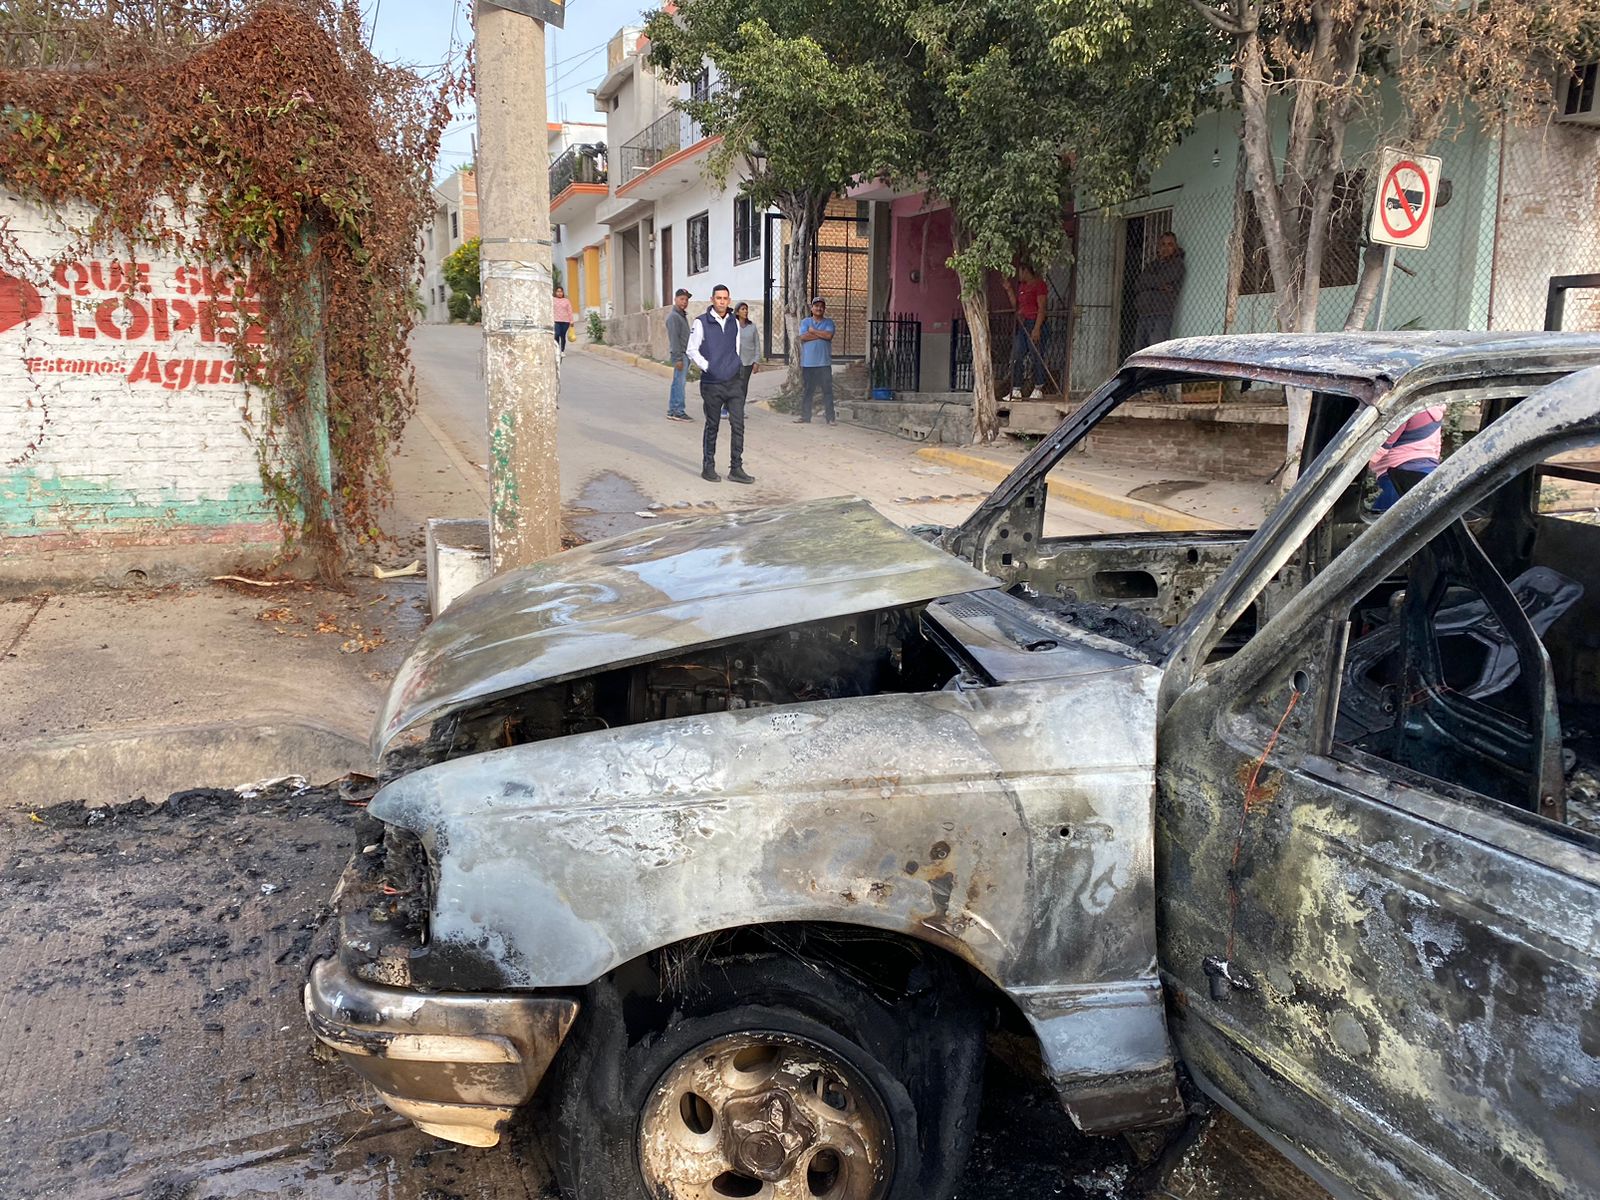 Camioneta calcinada por incendiarse en Villa Unión